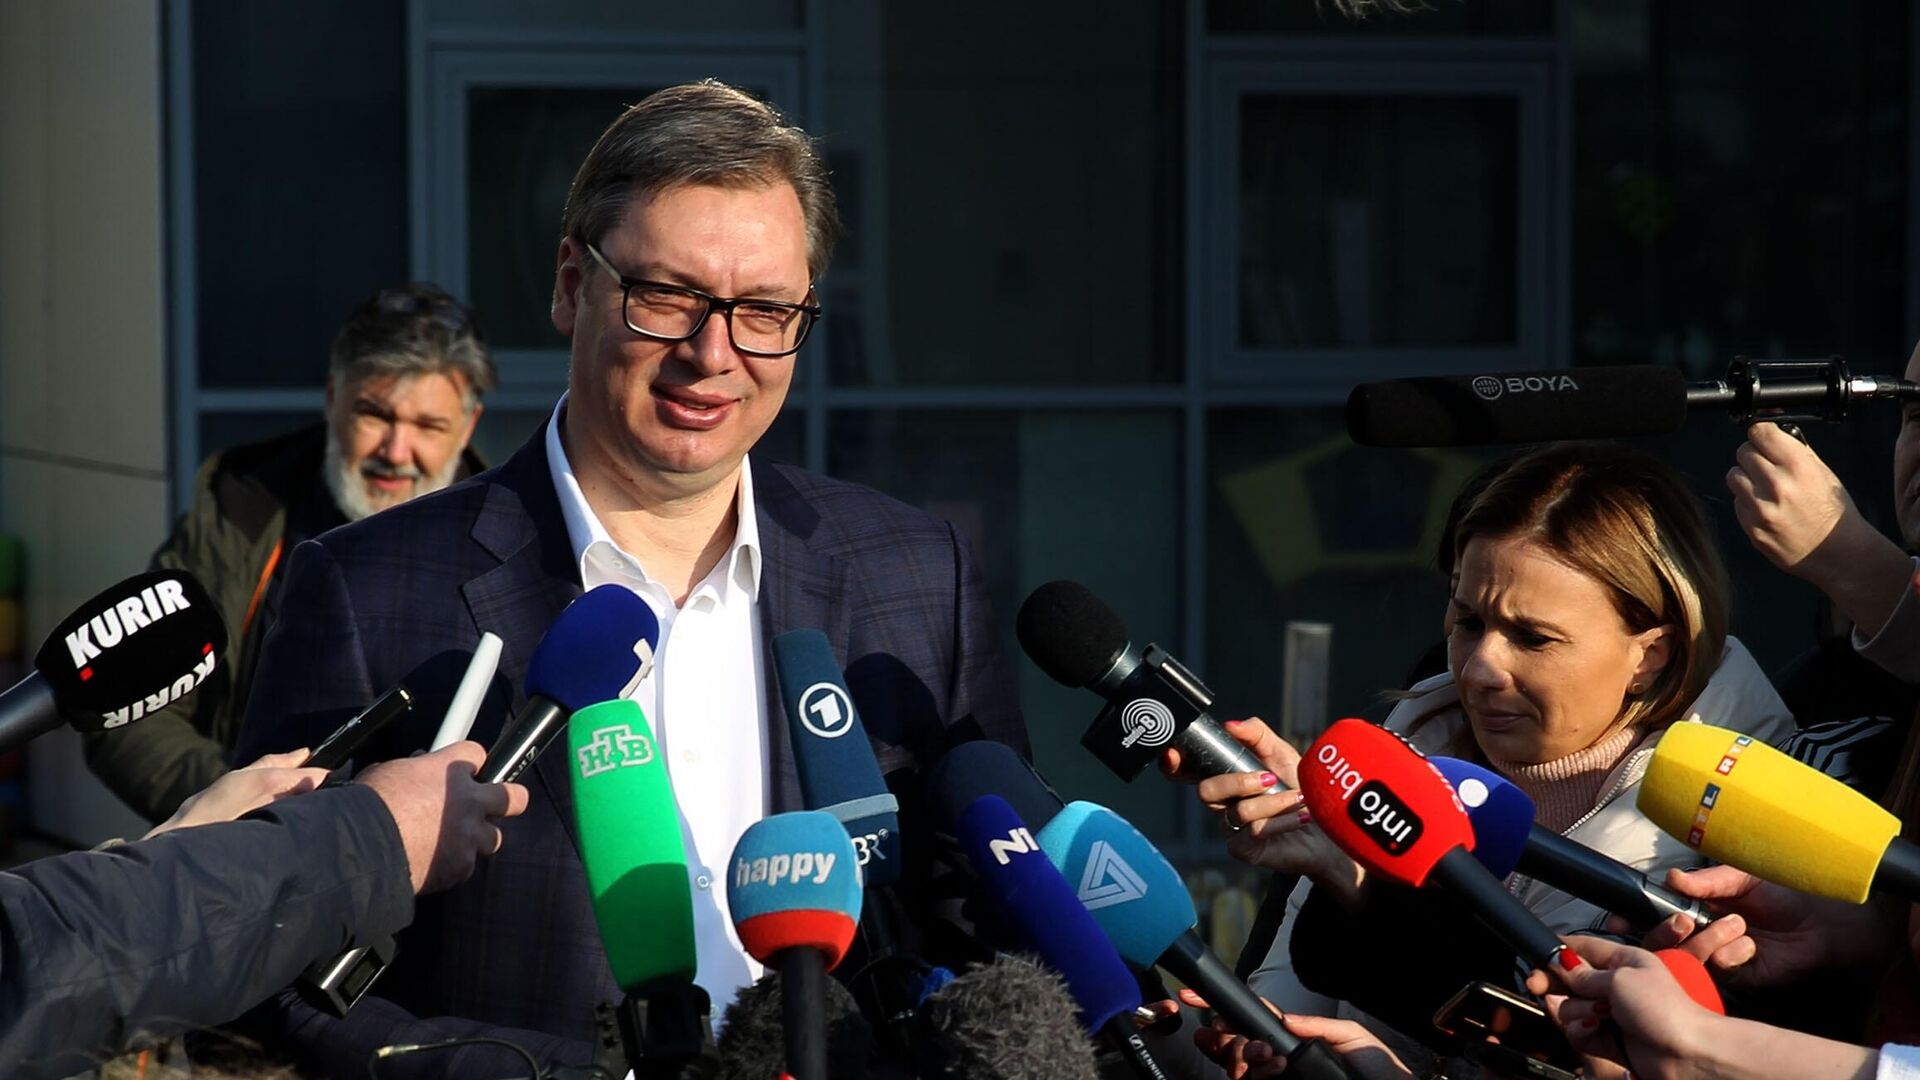 武契奇将继续担任塞尔维亚前进党主席至2022年大选